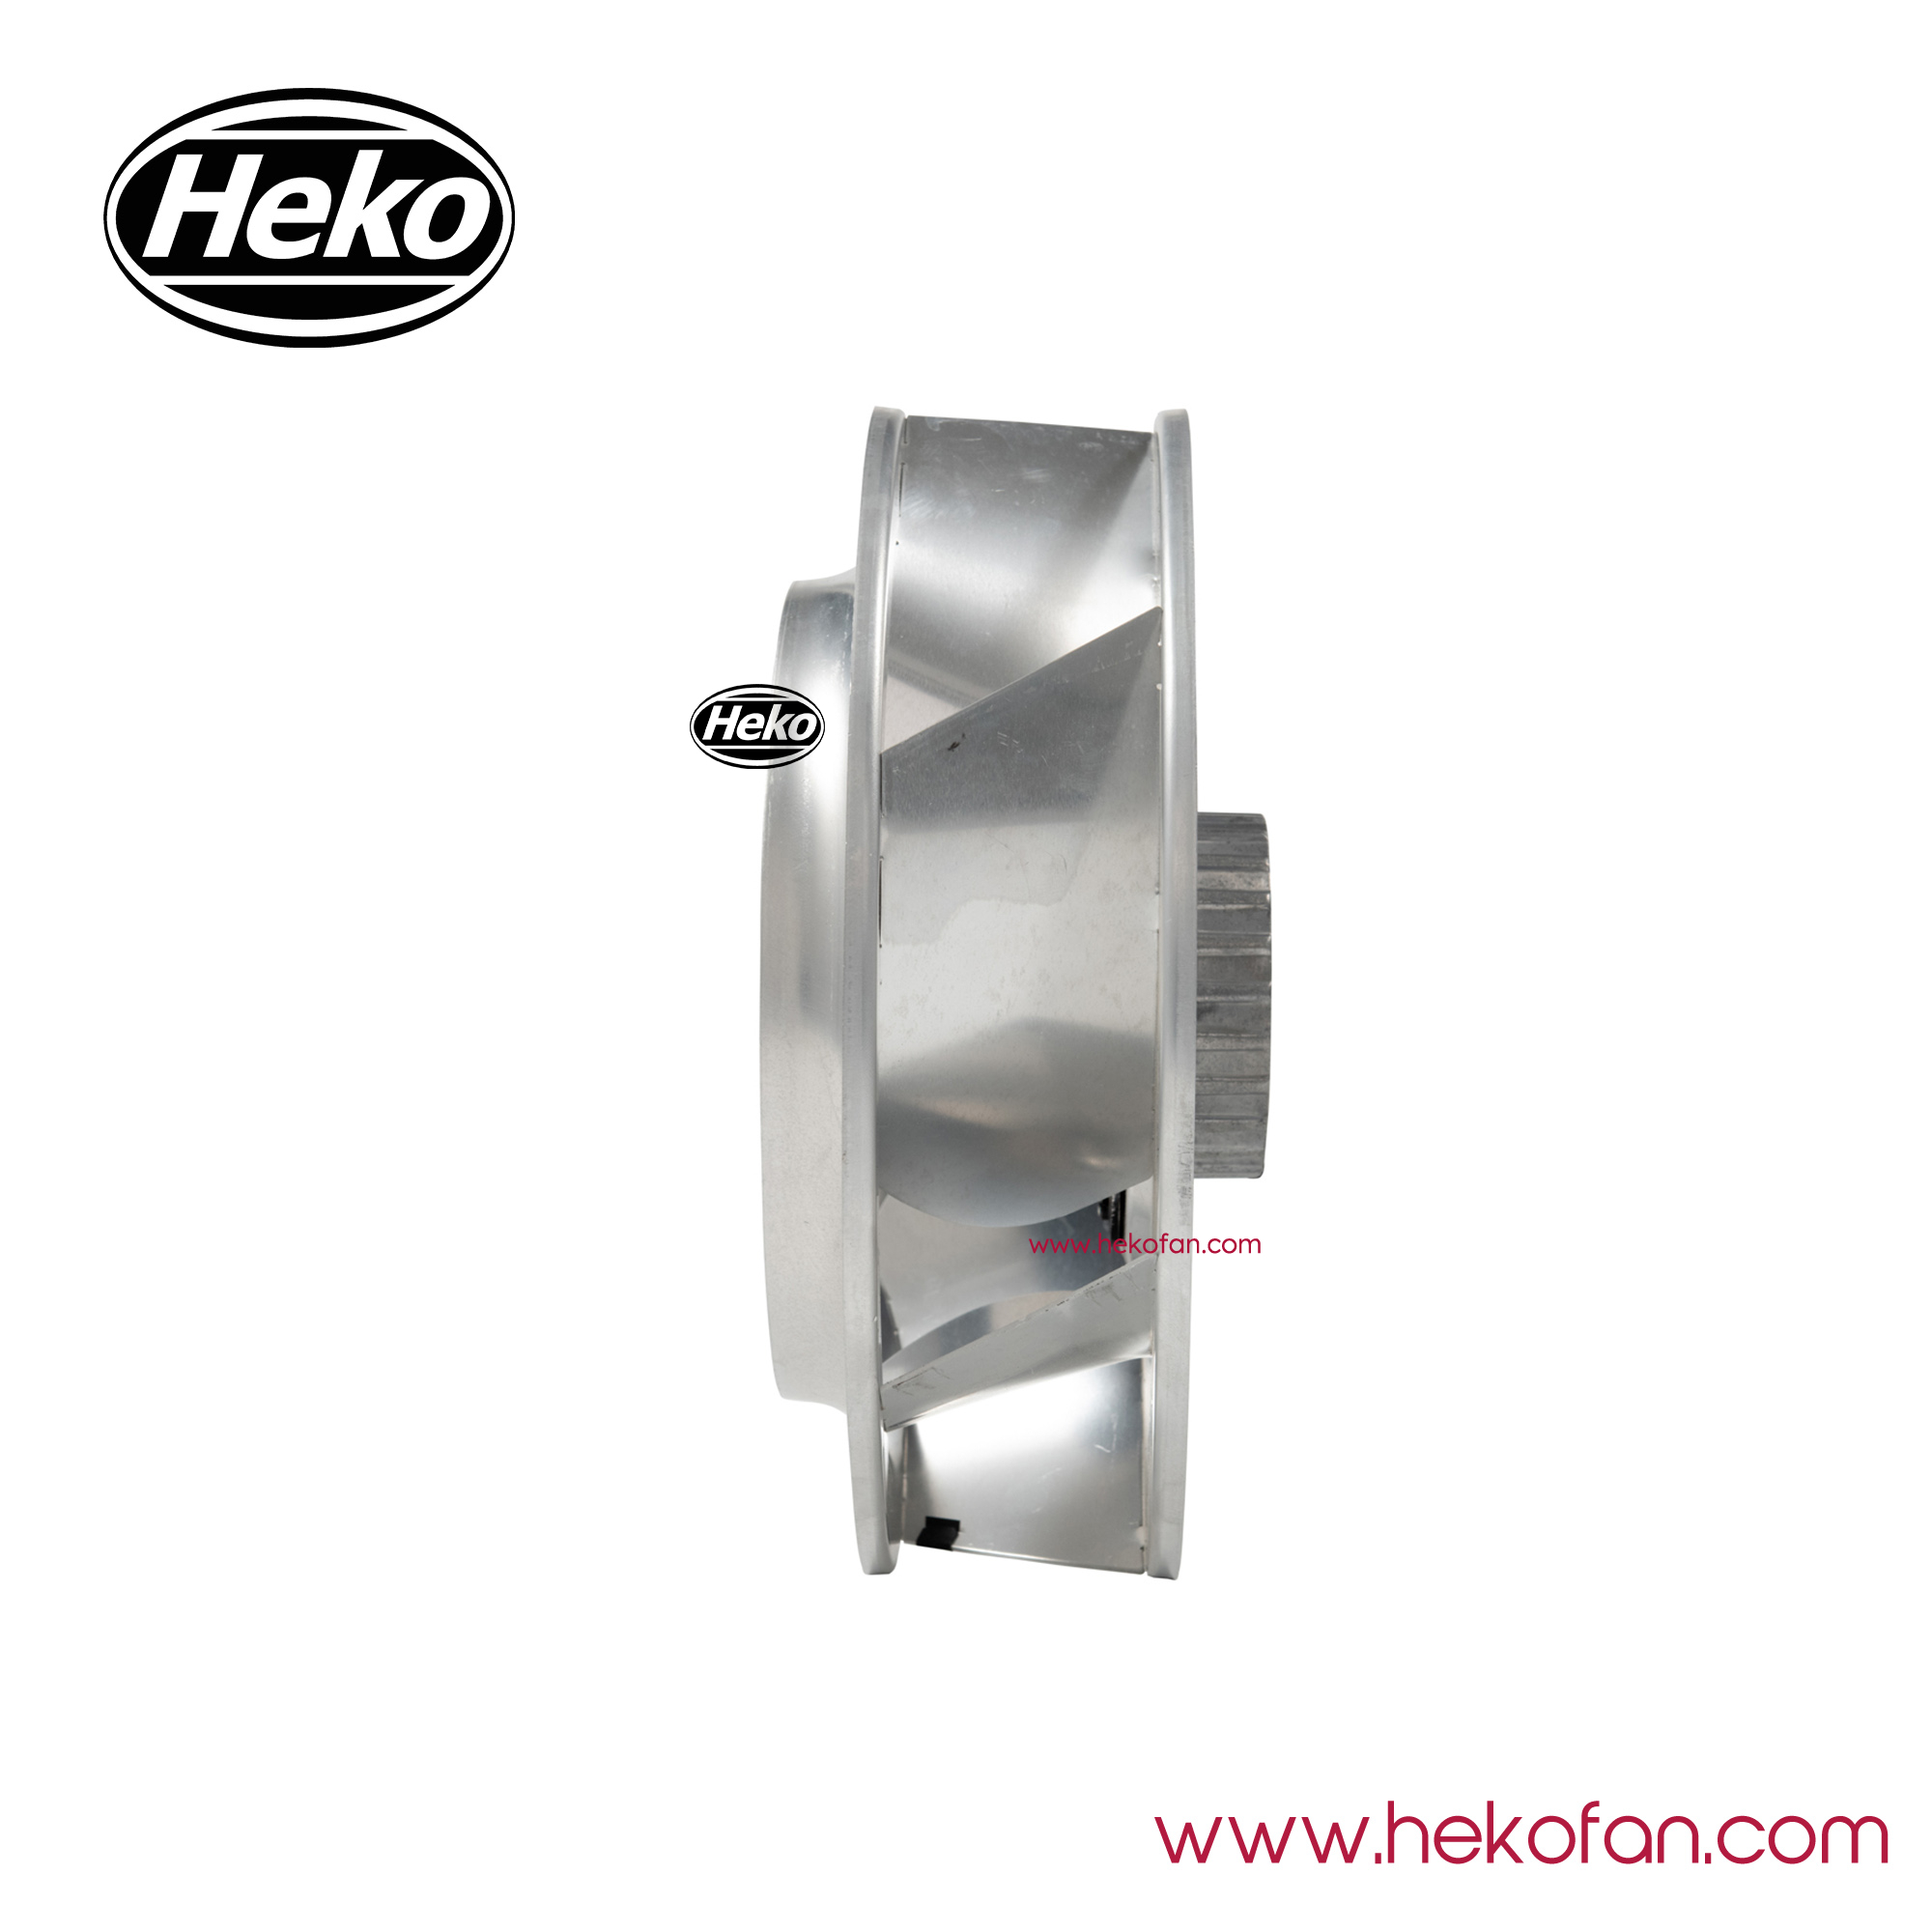 Ventilador de motor centrífugo HEKO DC102mm para purificador de aire